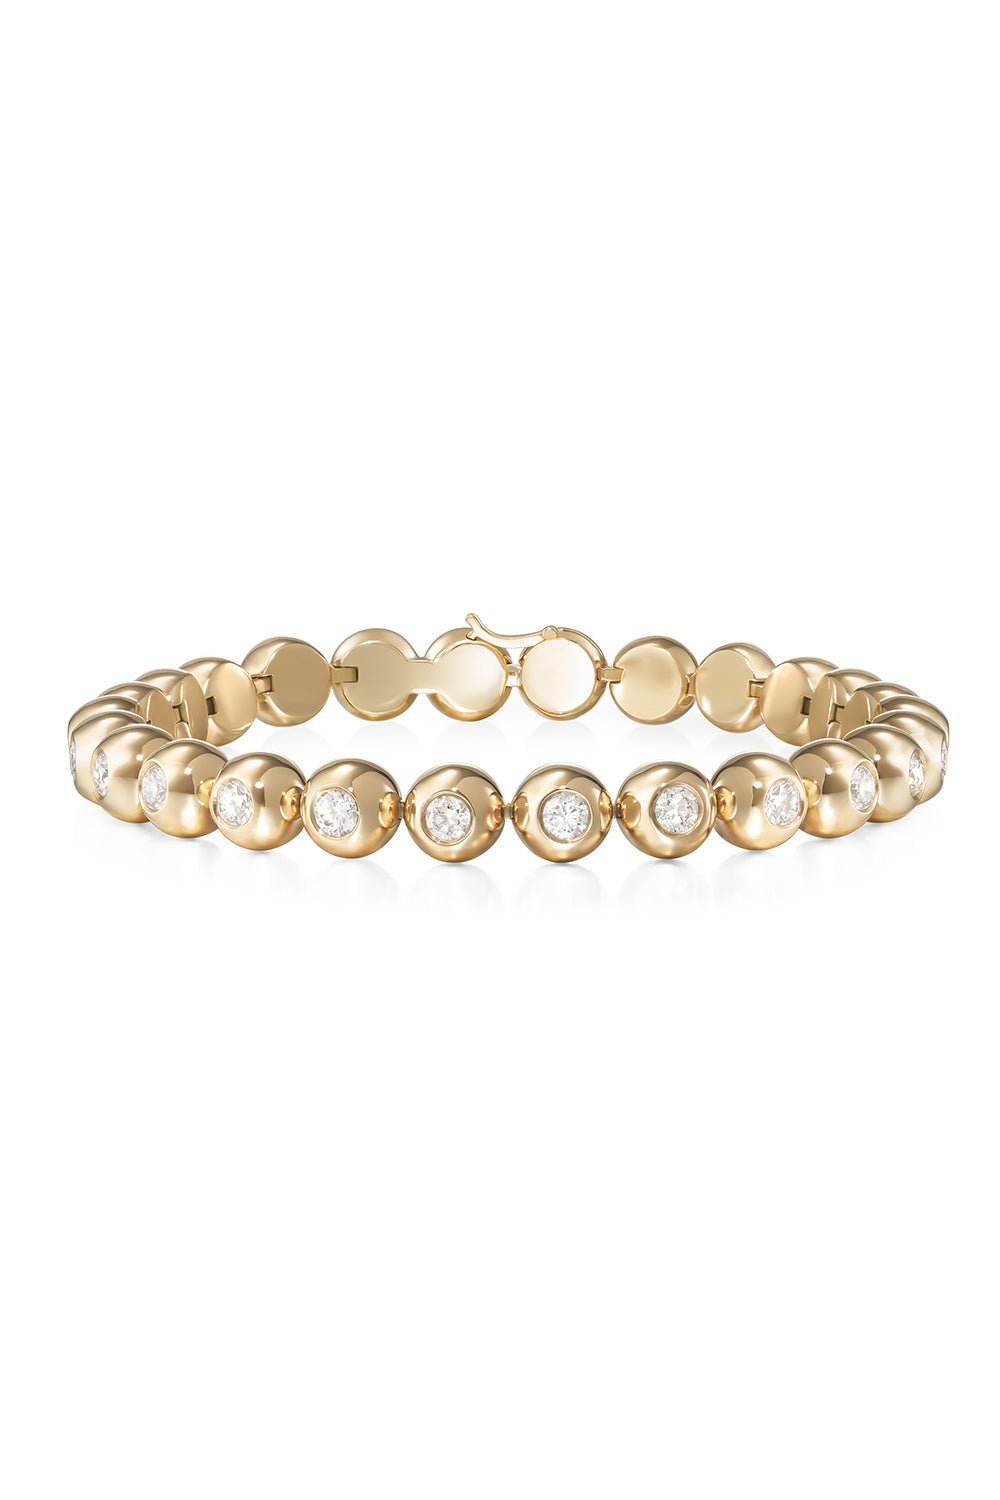 MELISSA KAYE-Medium Audrey Tennis Bracelet-YELLOW GOLD